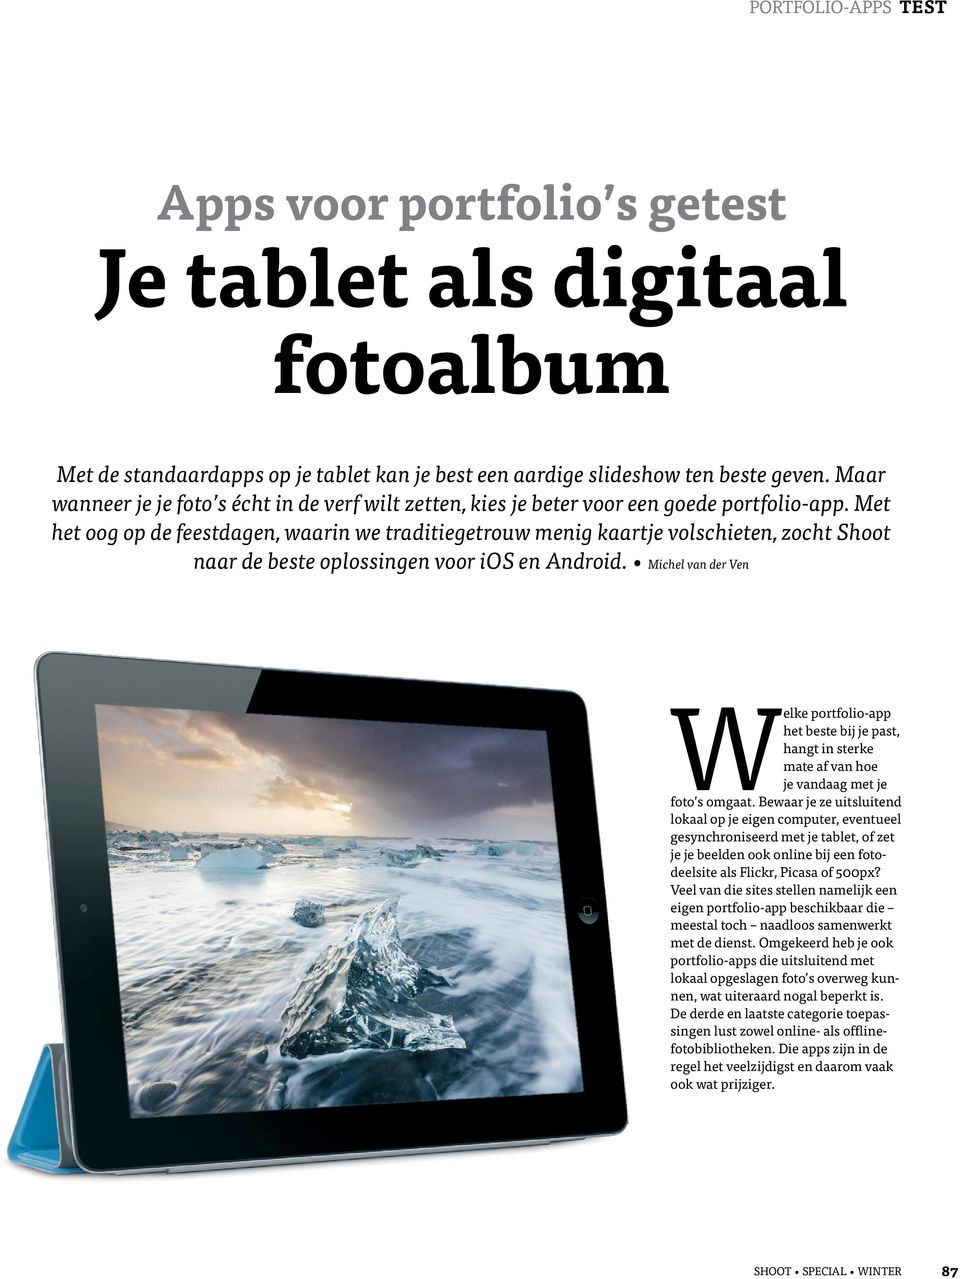 Welke Je tablet als digitaal fotoalbum. voor portfolio s getest - PDF Free Download